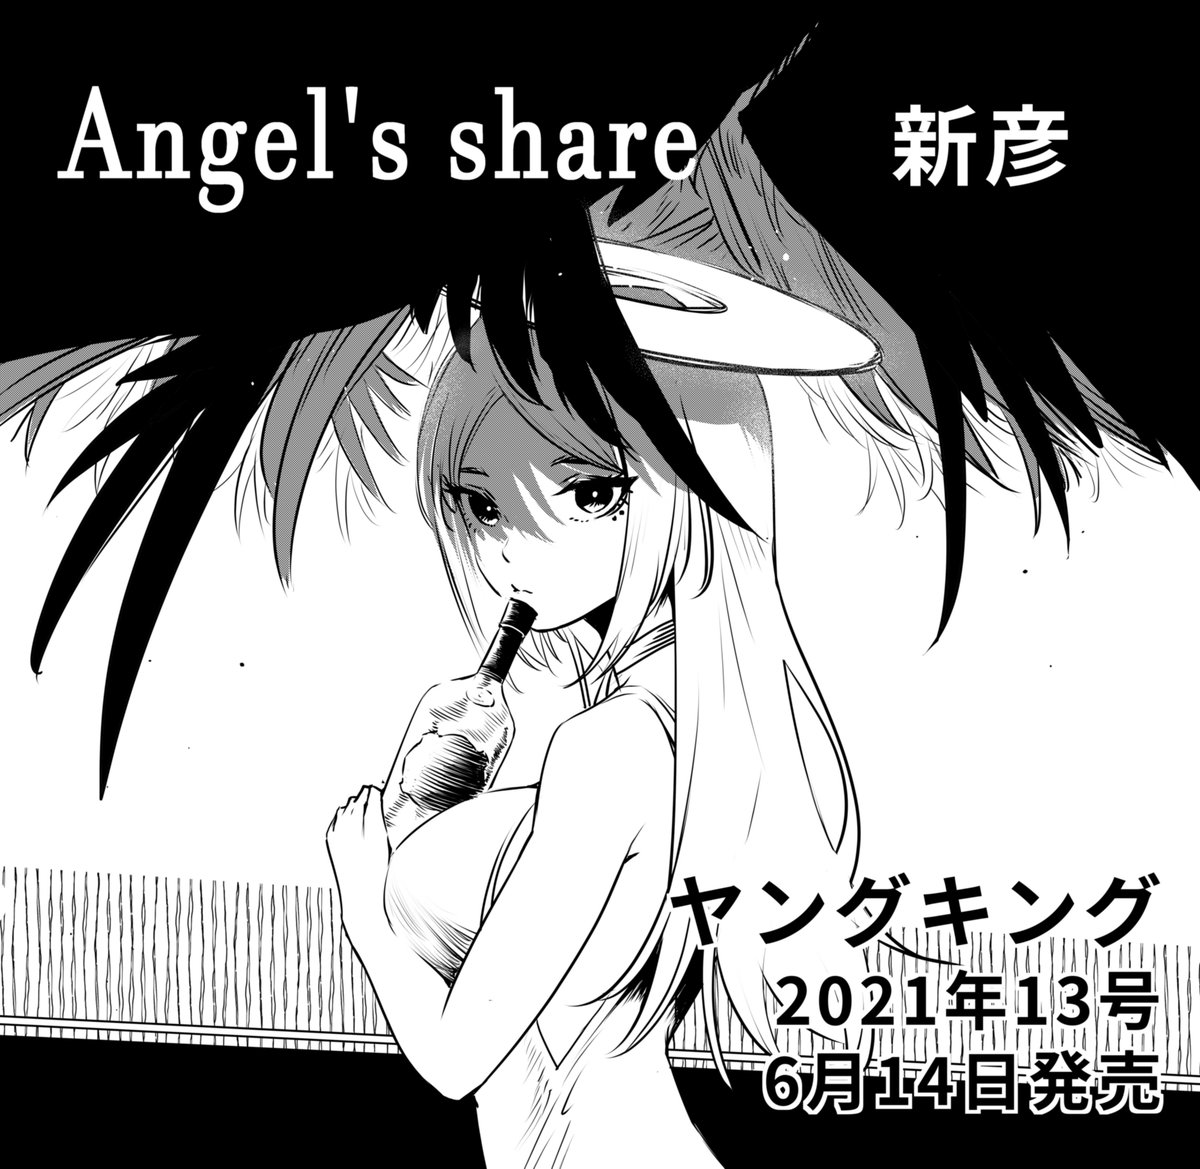 宣伝です。読み切りの「Angel's share」がヤングキング2021年13号に載ります。よろしくお願いします!
#ヤングキング #少年画報社 